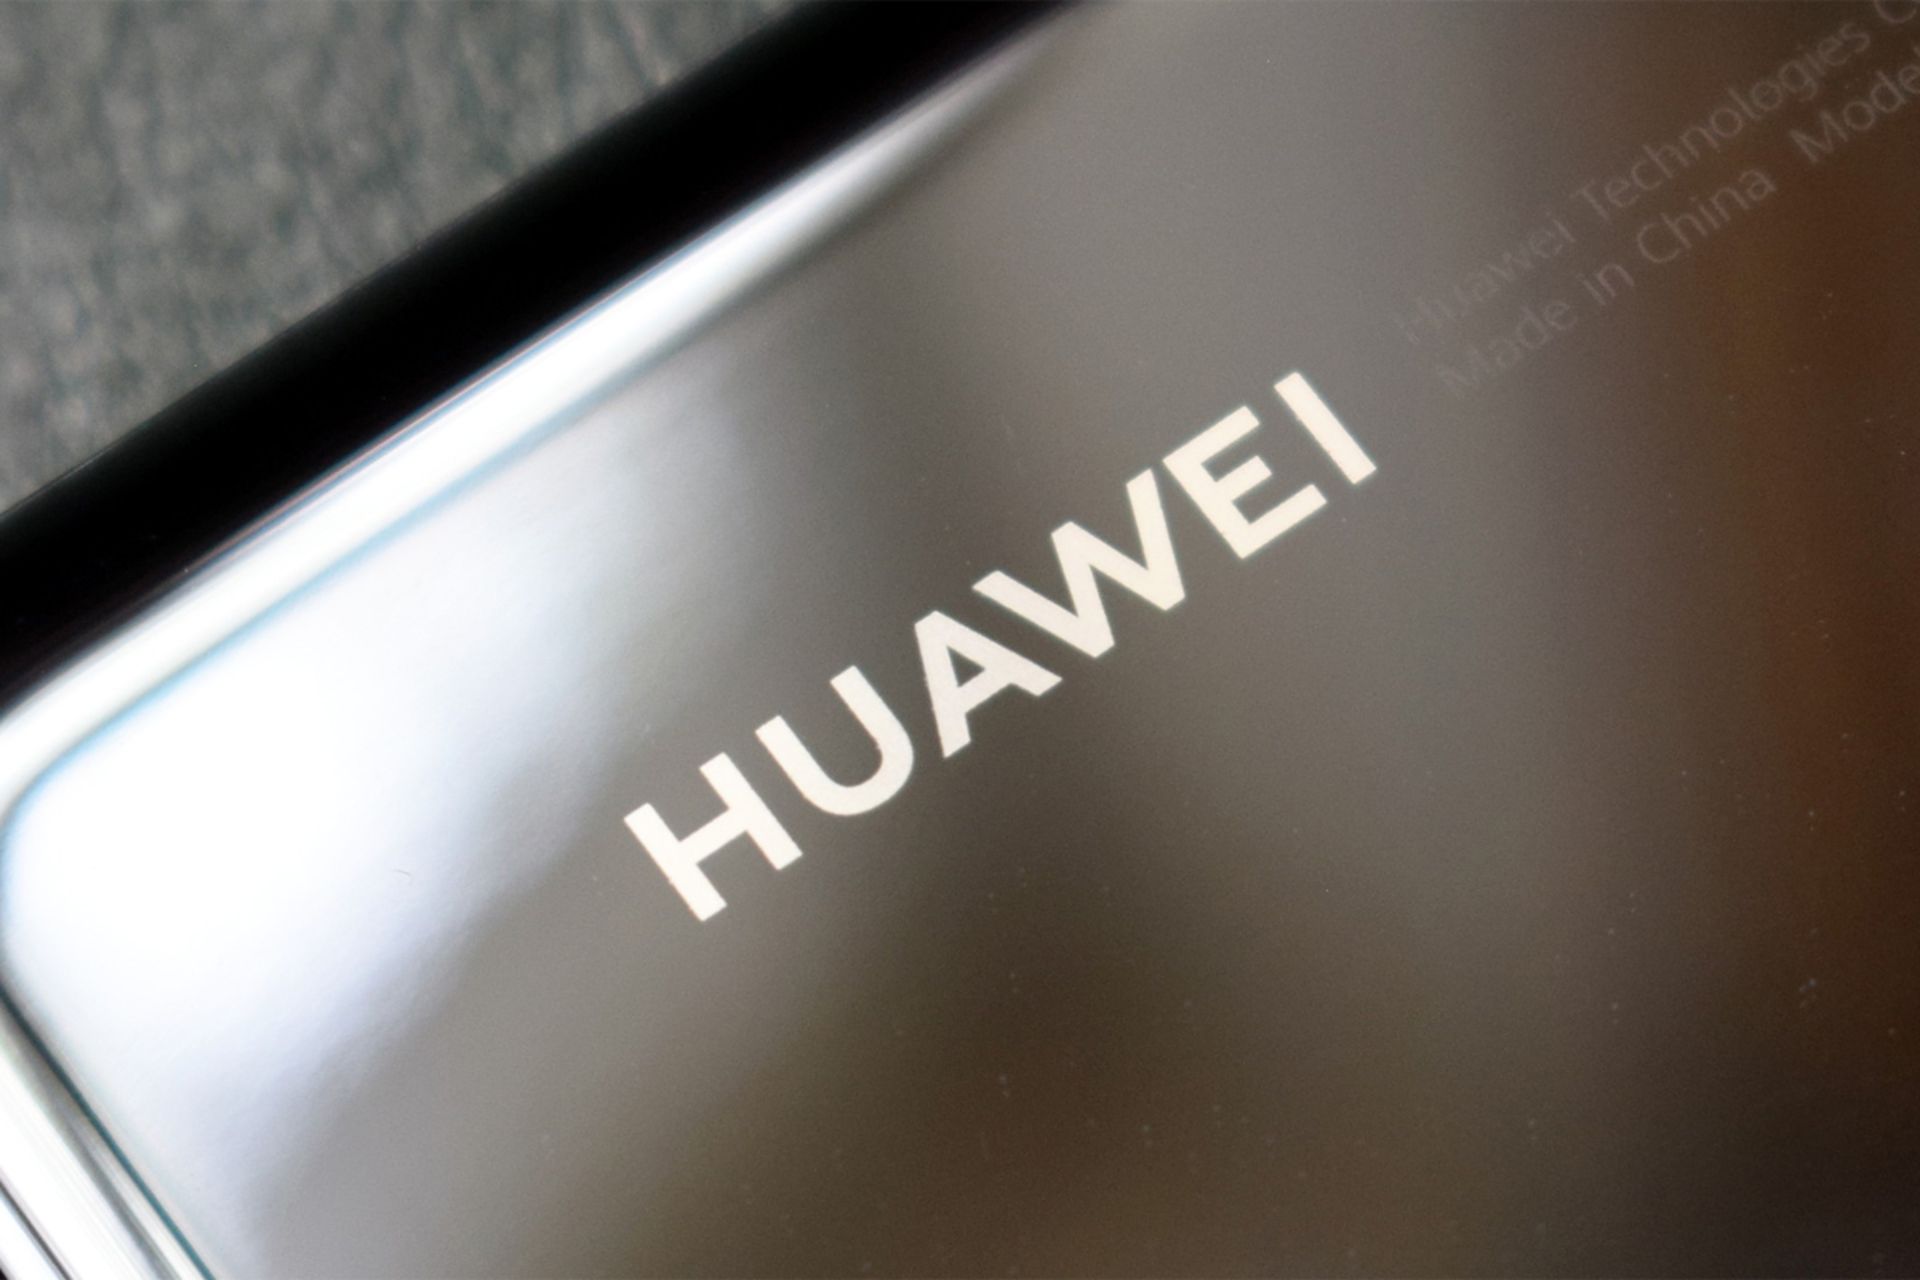 لوگو هواوی / Huawei در پنل پشتی گوشی هوشمند